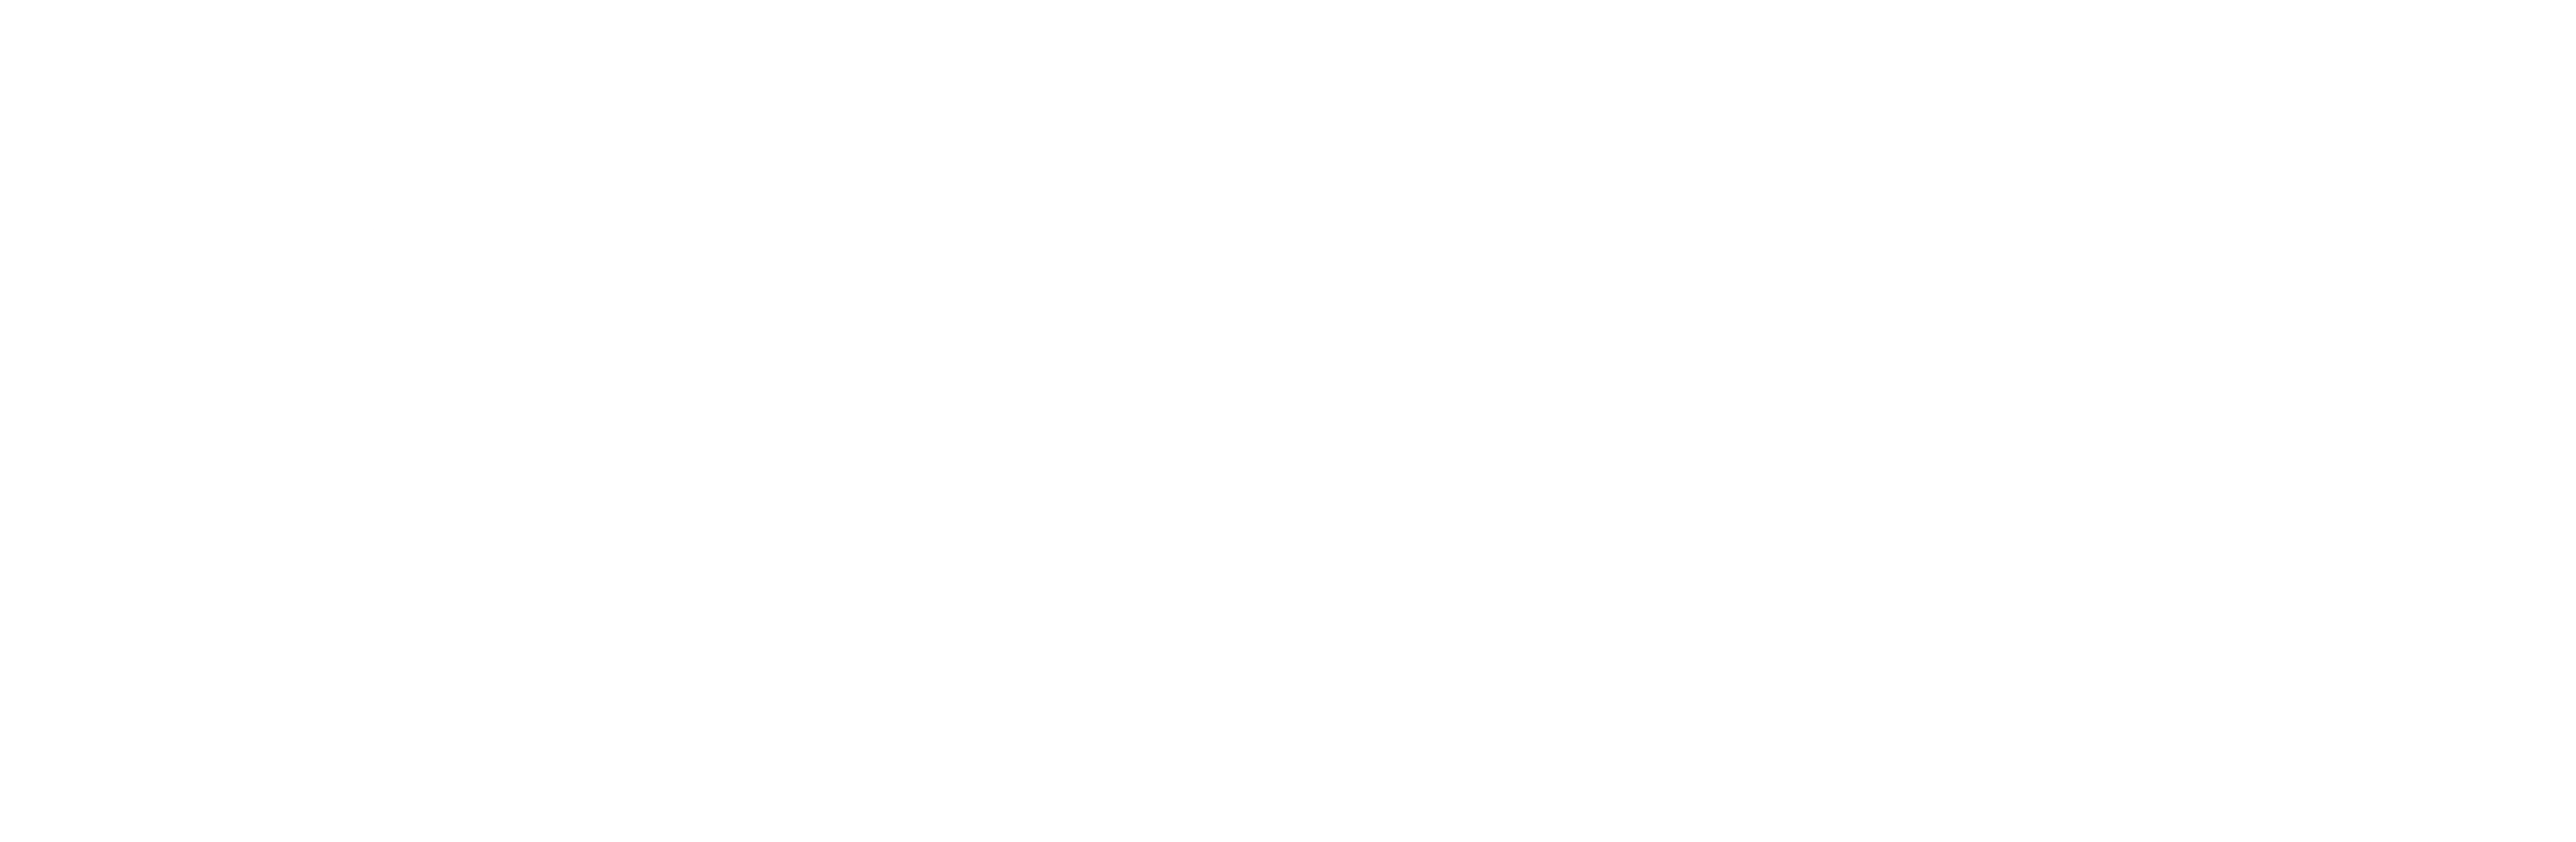 Logos von CRM-Systemen